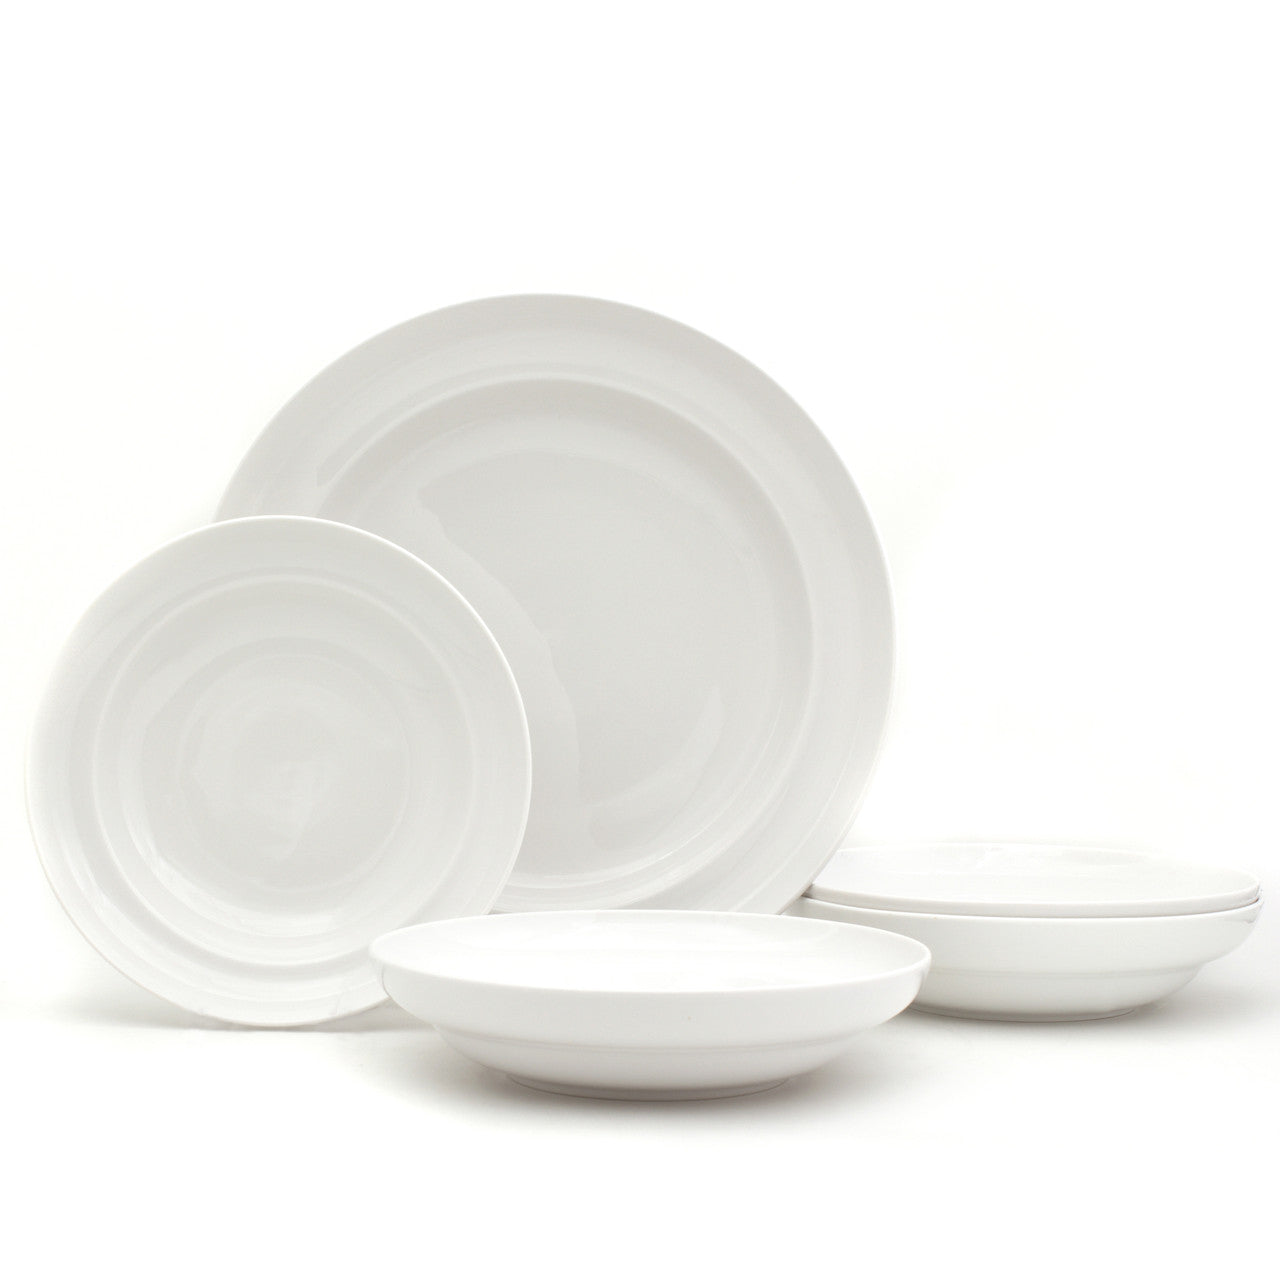 Everyday White® 5 Piece Pasta Bowl Set